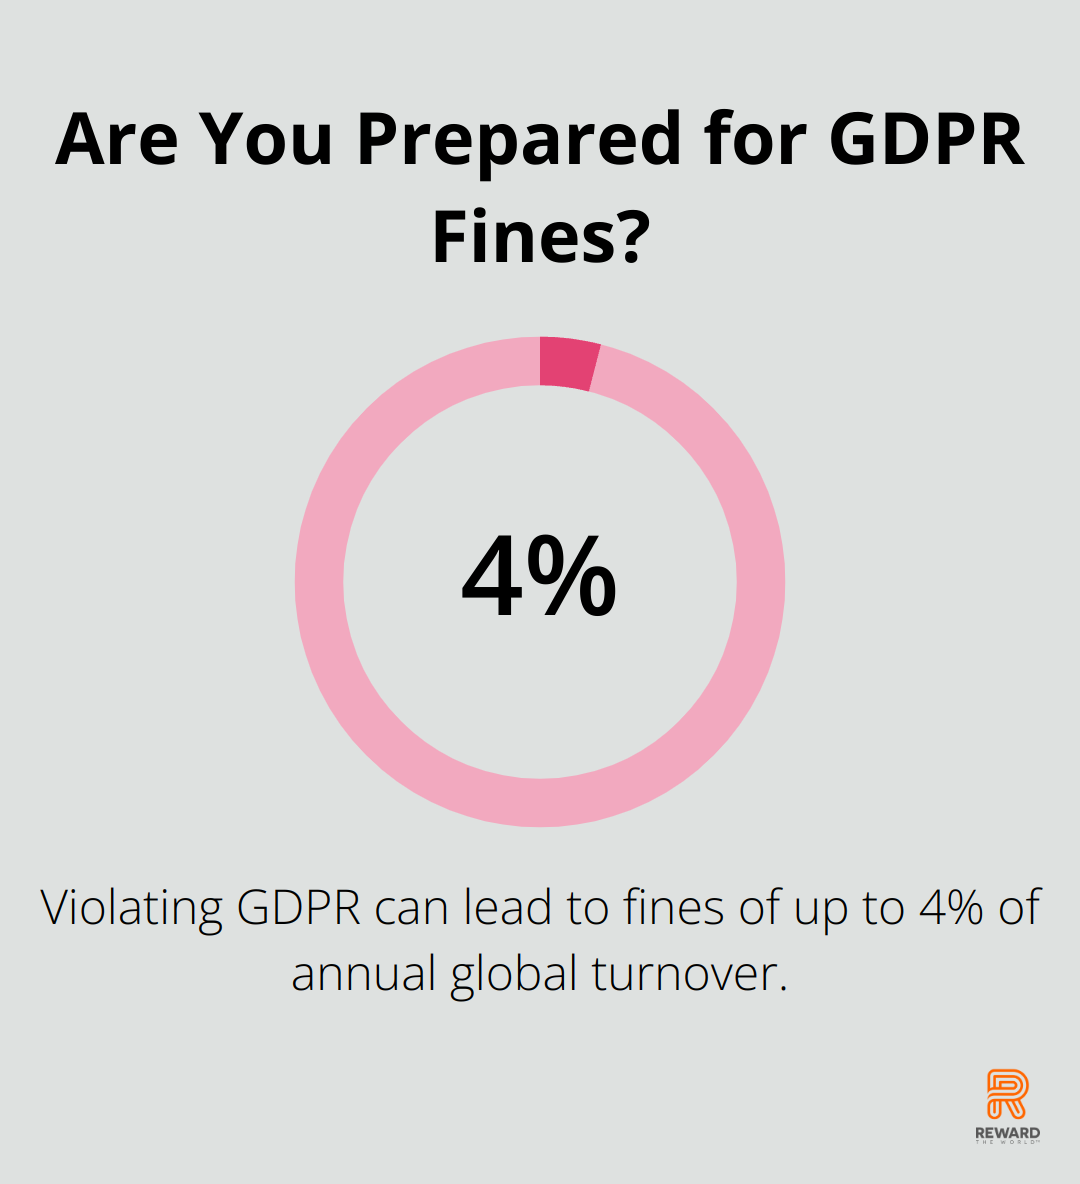 Are You Prepared for GDPR Fines?